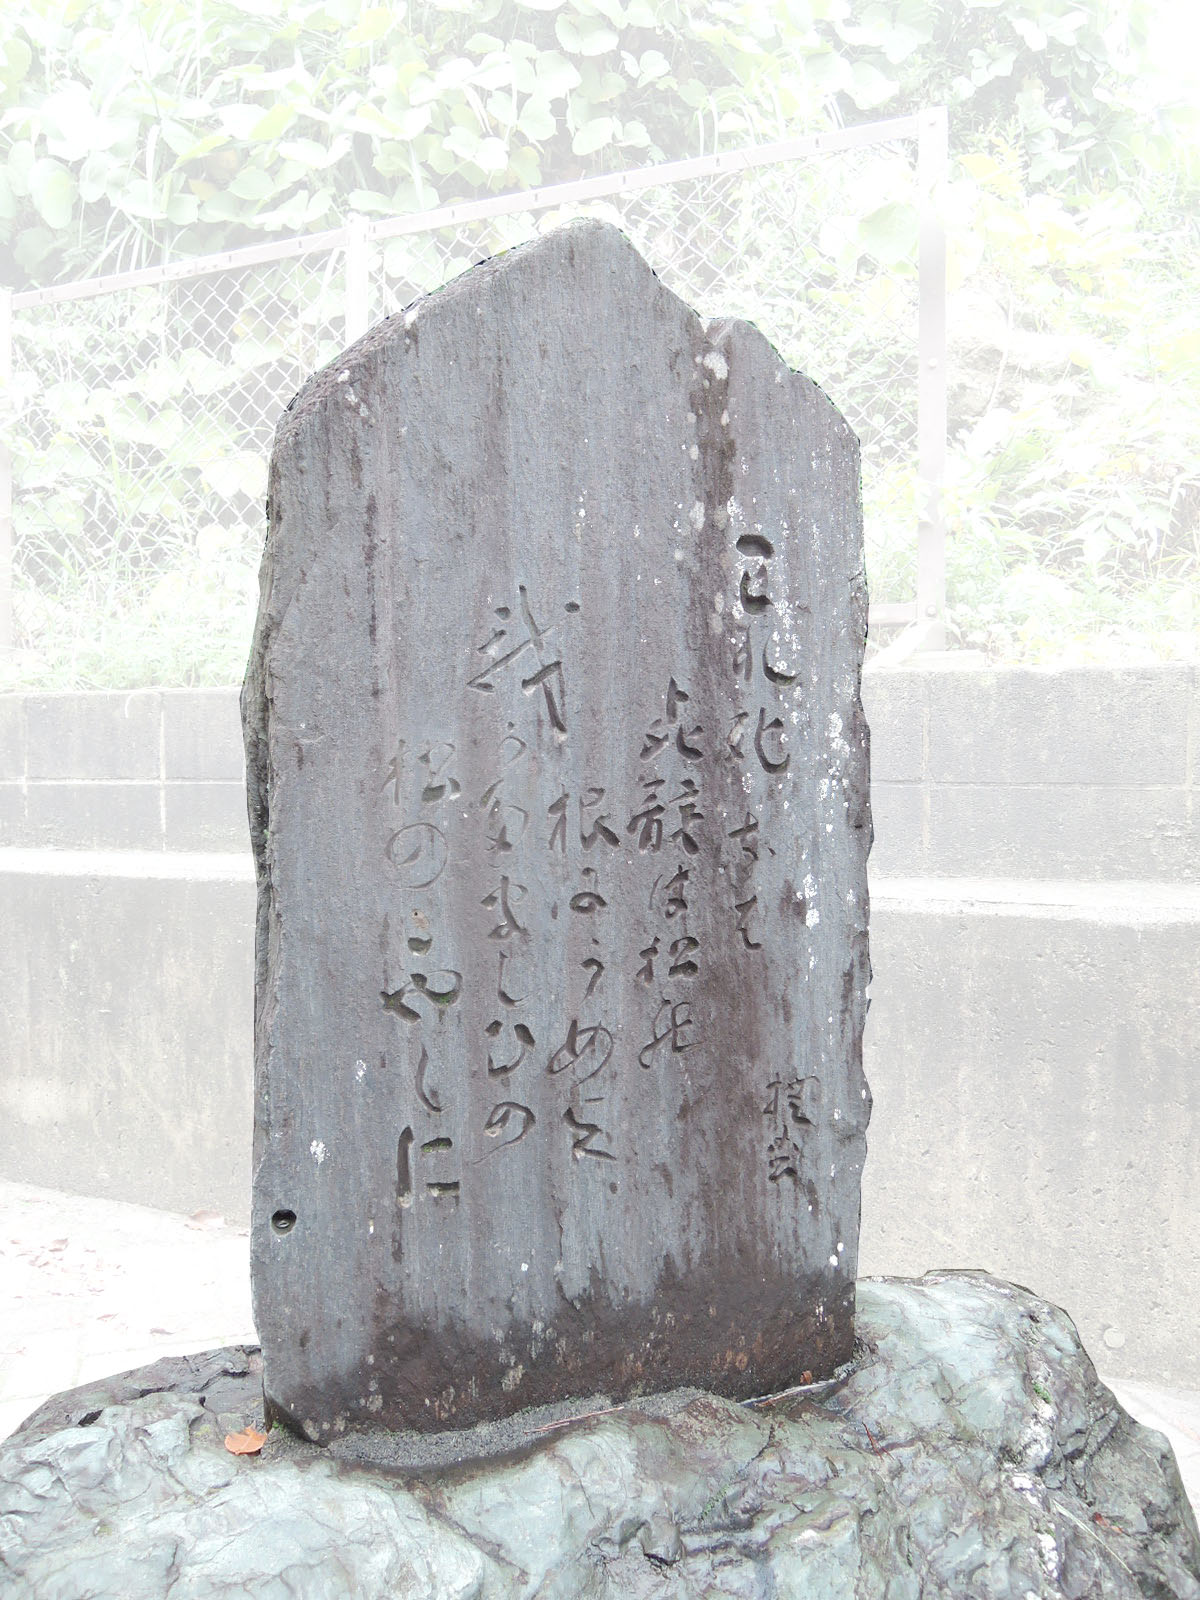 現在の鎌倉の歌碑。鎌倉保育園後進の施設「鎌倉児童ホーム」の玄関に設置されている。